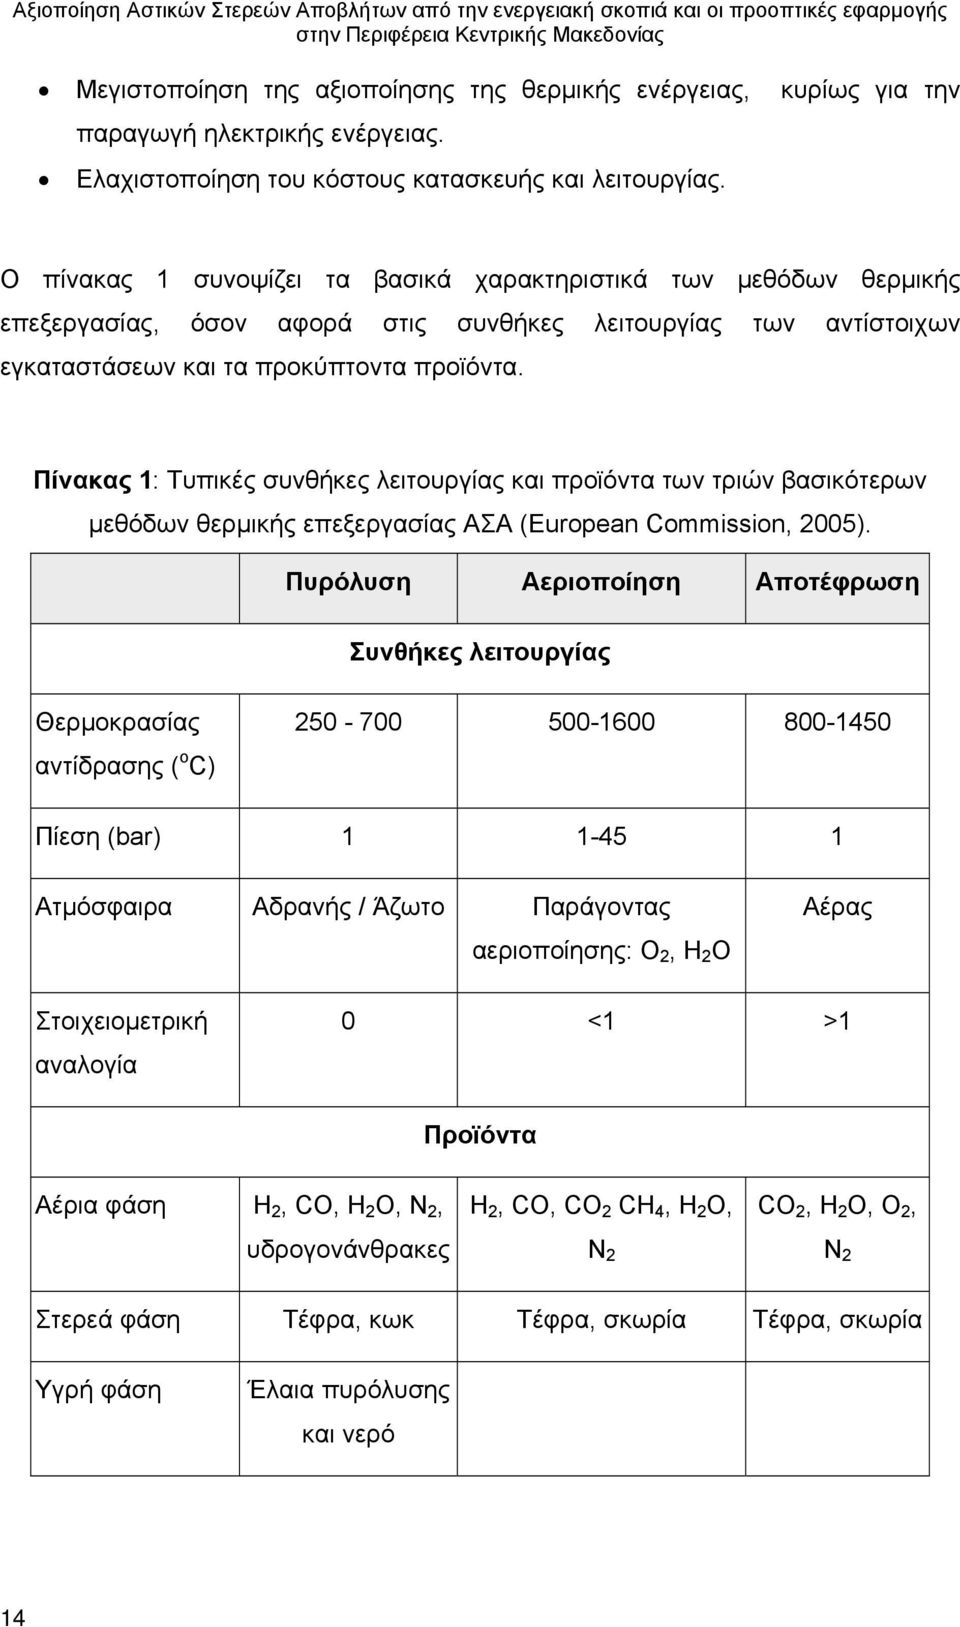 Πίνακας 1: Τυπικές συνθήκες λειτουργίας και προϊόντα των τριών βασικότερων μεθόδων θερμικής επεξεργασίας ΑΣΑ (European Commission, 2005).